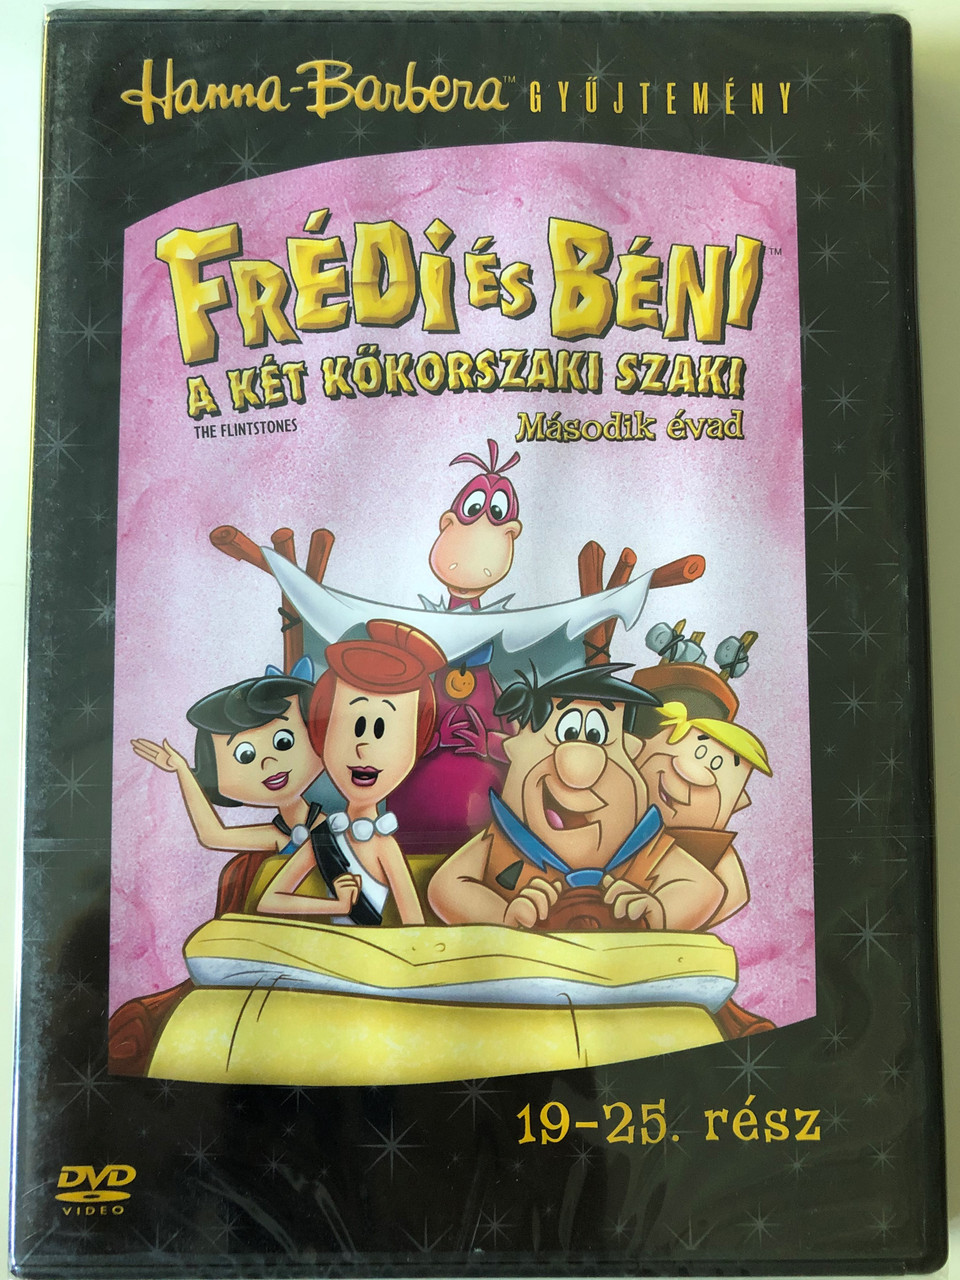 The Flintstones S2 Disc 4 DVD 1966 Frédi és Béni A két kőkorszaki szaki /  Season 2 / Episodes 19-25 / Hanna-Barbera / Animated Classic -  bibleinmylanguage